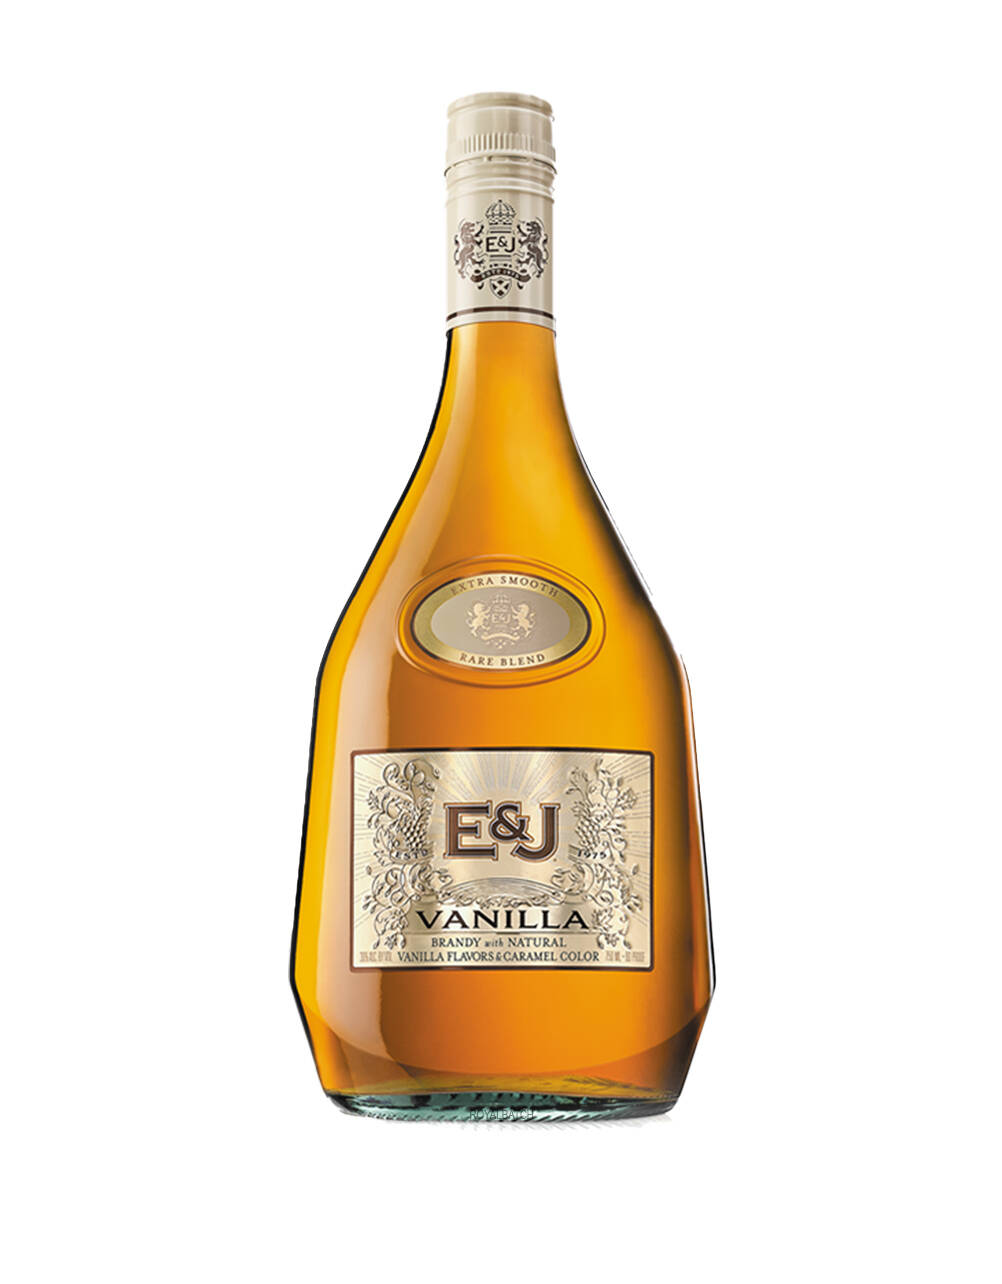 E&J Vanilla Flavored Brandy